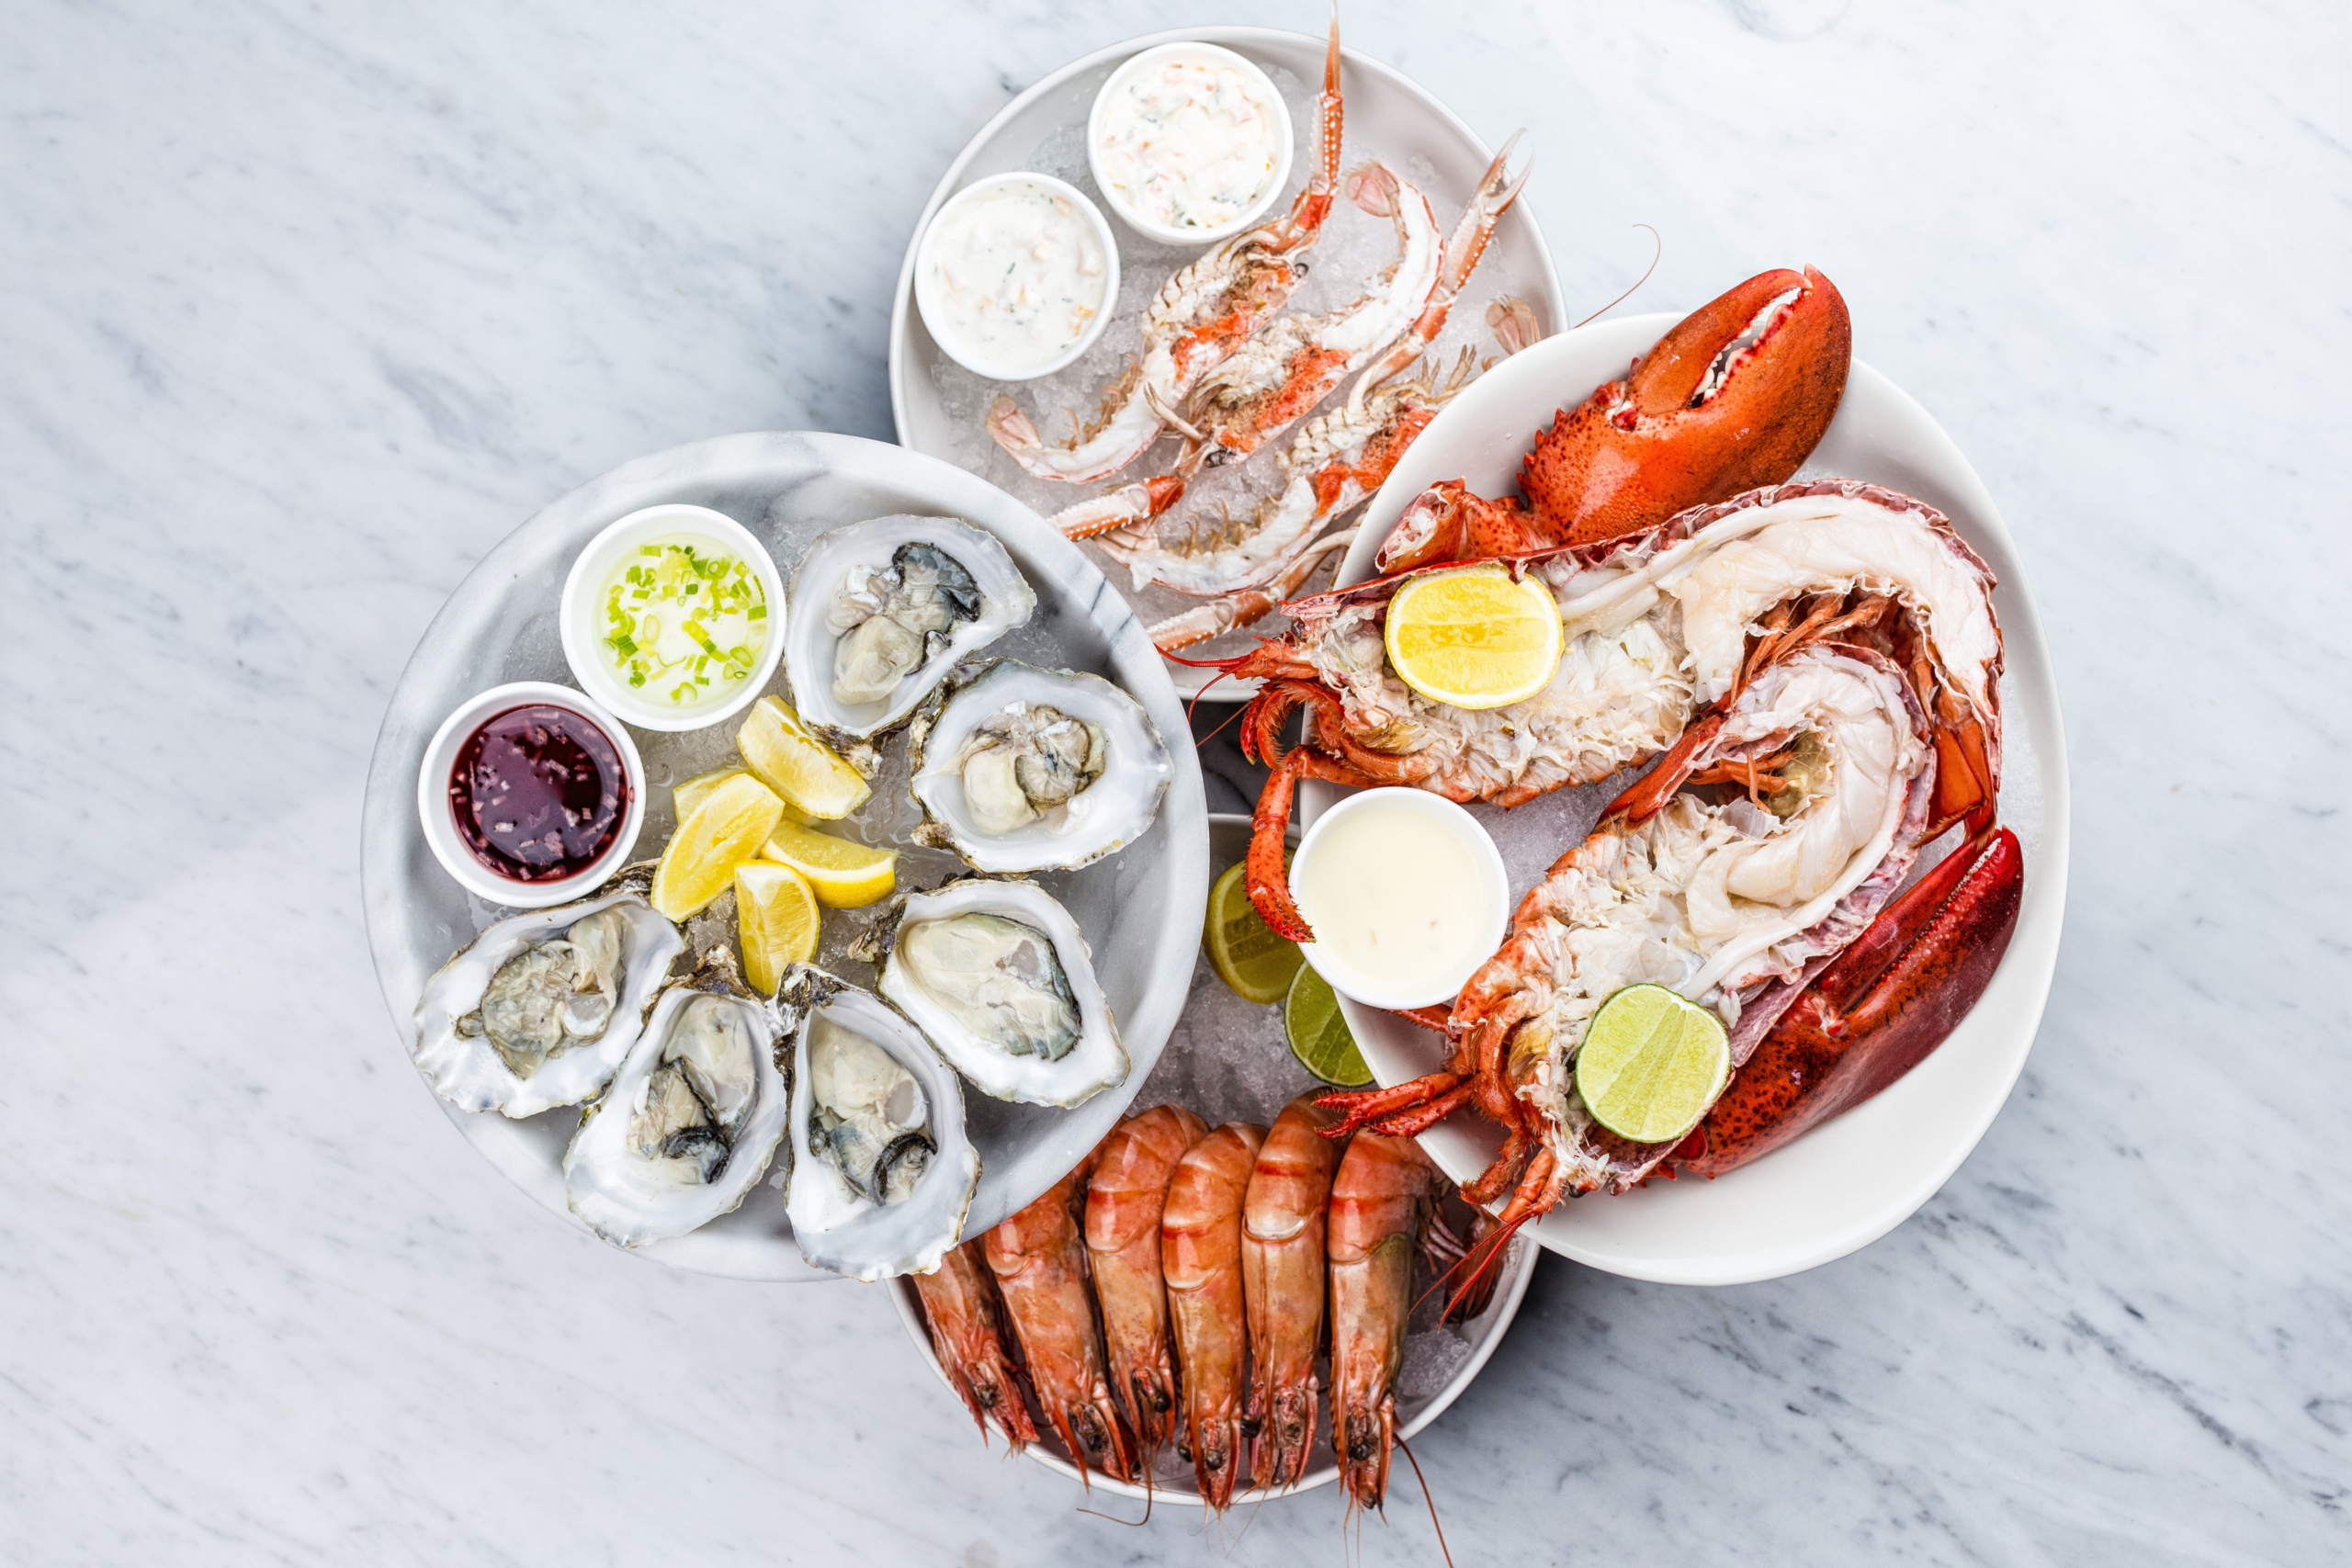 Oregon là thiên đường ẩm thực cho những người yêu thích hải sản. (Ảnh: Shutterstock)